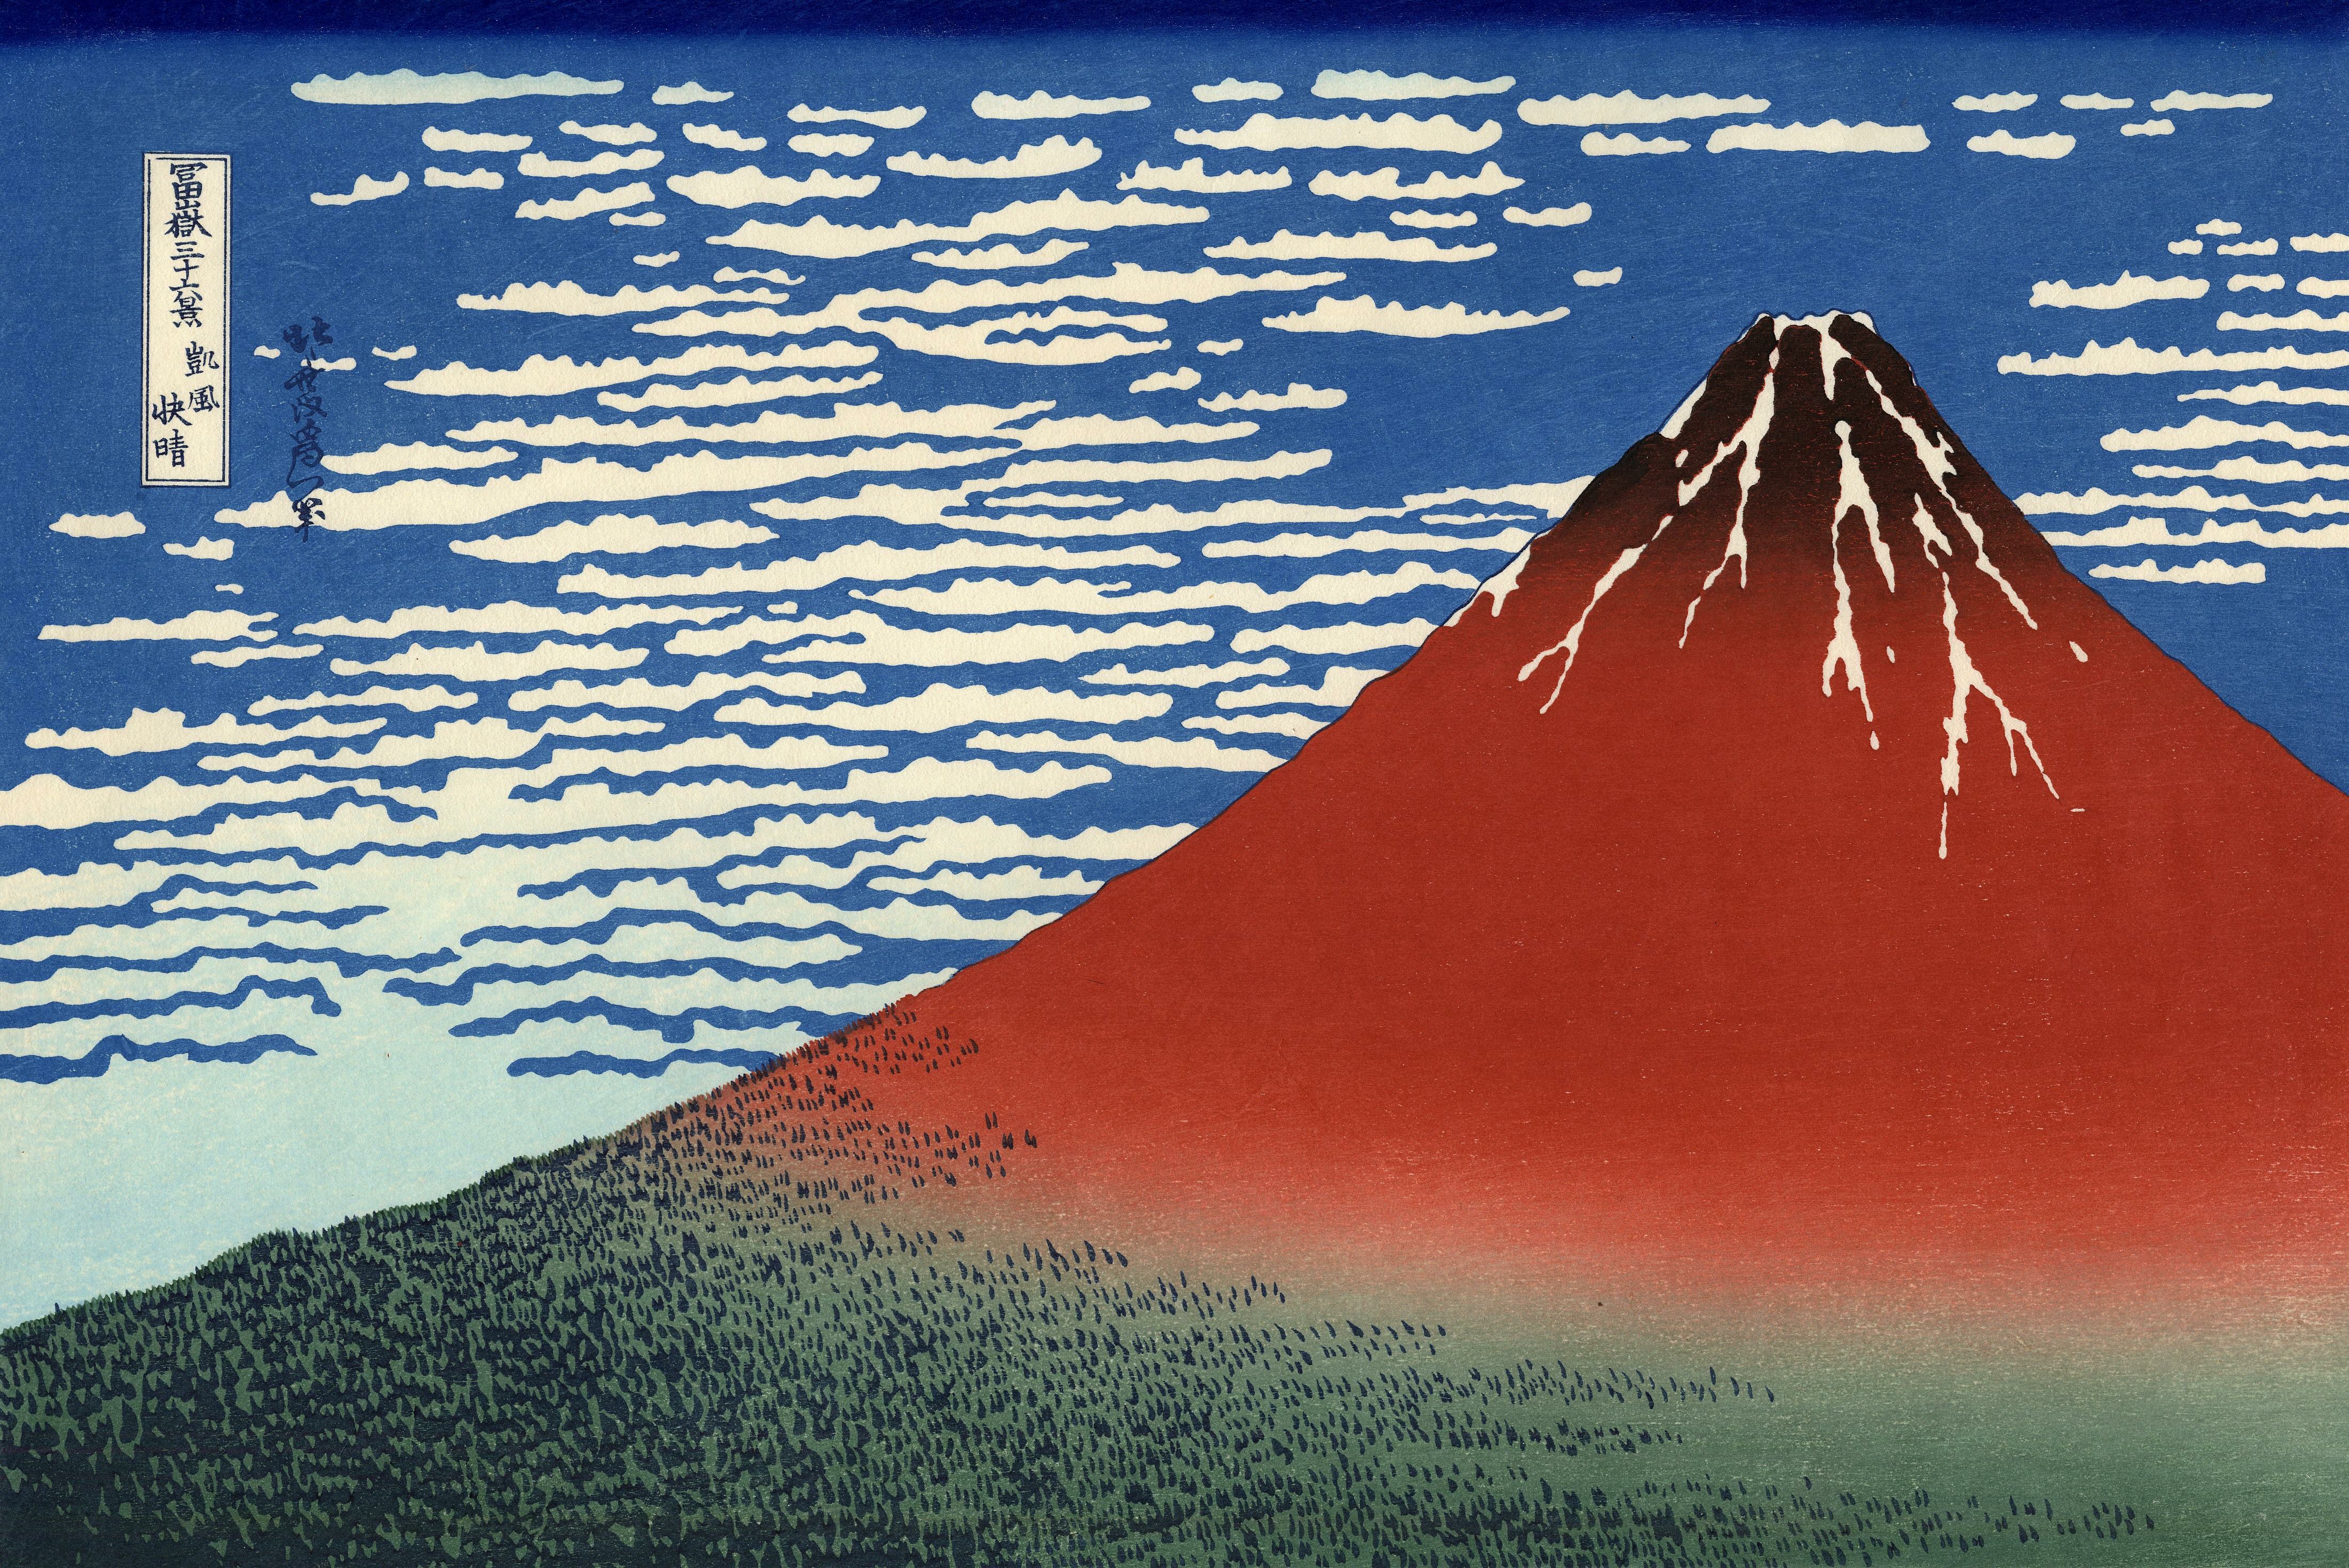 火山爆發怎知道？火山灰會報到──《課本沒教的天災日本史》 - PanSci 泛科學